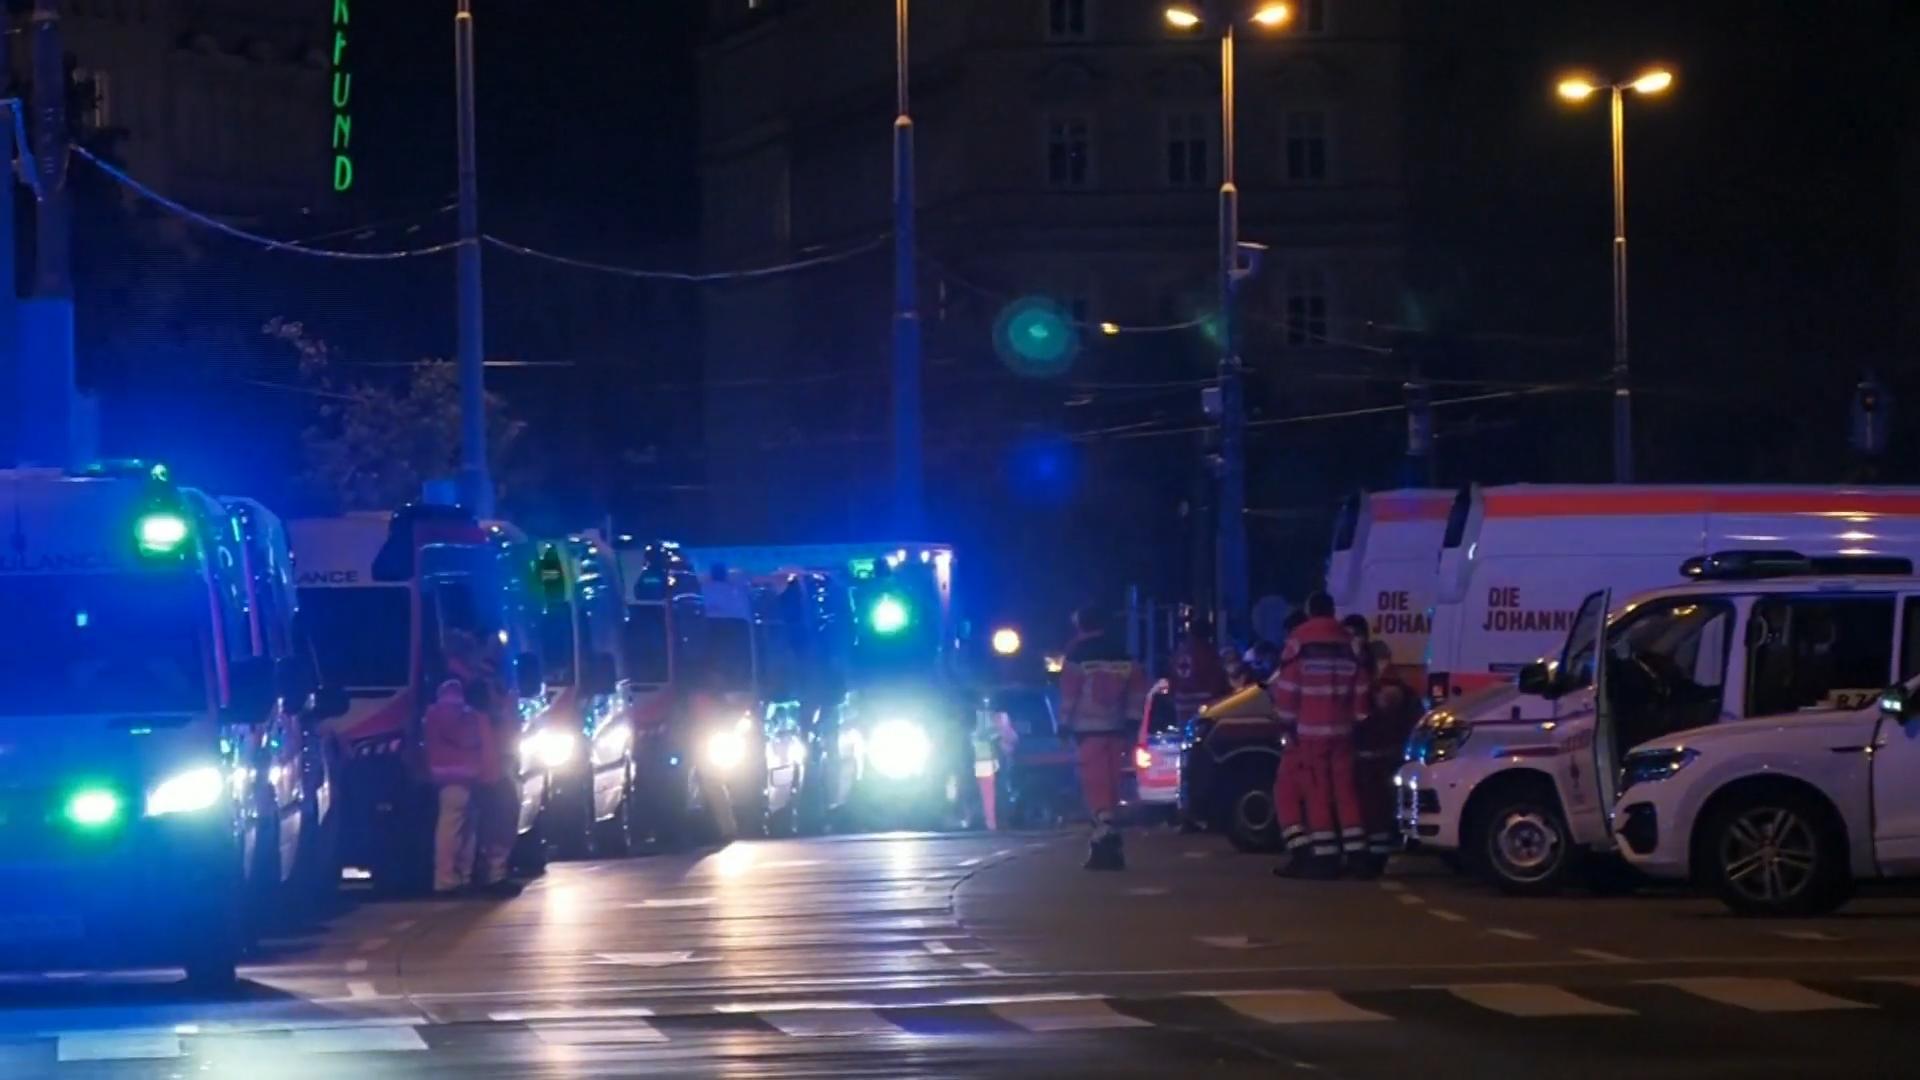 Terroranschlag in Wien Chronologie der Ereignisse